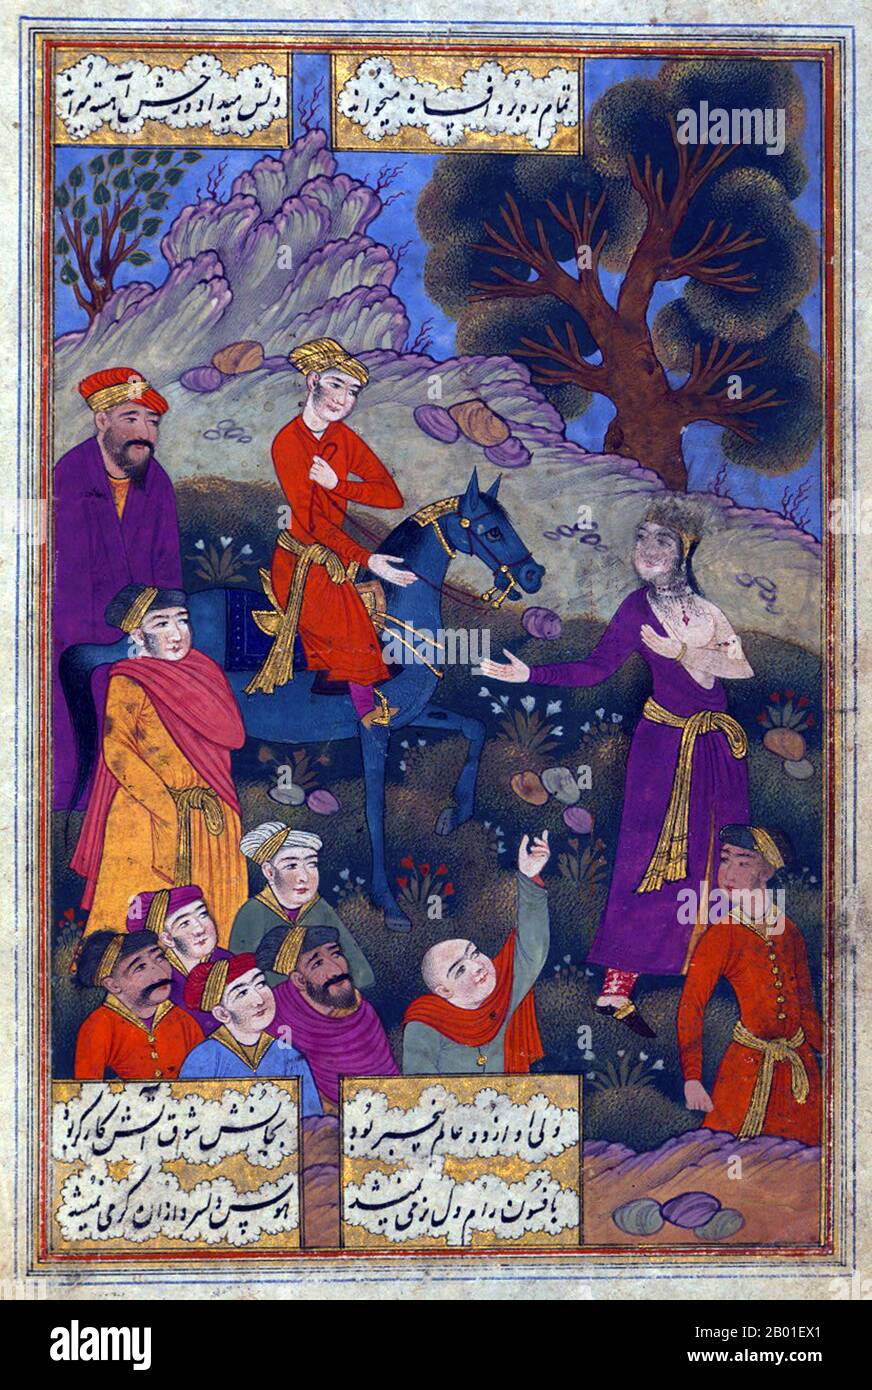 Indien: Prinz Daniyal begleitet das junge Hindu-Mädchen zum Scheiterhaufen. Aus dem beleuchteten Manuskriptgedicht Sūz va gudāz („Burning and Melting“) von Muhammad Riza Naw'i Khabushani (1563-1610). c. 1657. Akbar (25. Oktober 1542 bis 27. Oktober 1605), auch bekannt als Shahanshah Akbar-e-Azam oder Akbar der große, war der dritte Mogul-Kaiser. Er war von timuridem Abstammung; der Sohn von Kaiser Humayun und der Enkel von Kaiser Babur, dem Herrscher, der die Mogul-Dynastie in Indien gründete. Am Ende seiner Herrschaft im Jahr 1605 erstreckte sich das Mogul-Reich über den größten Teil des nördlichen und mittleren Indiens. Stockfoto